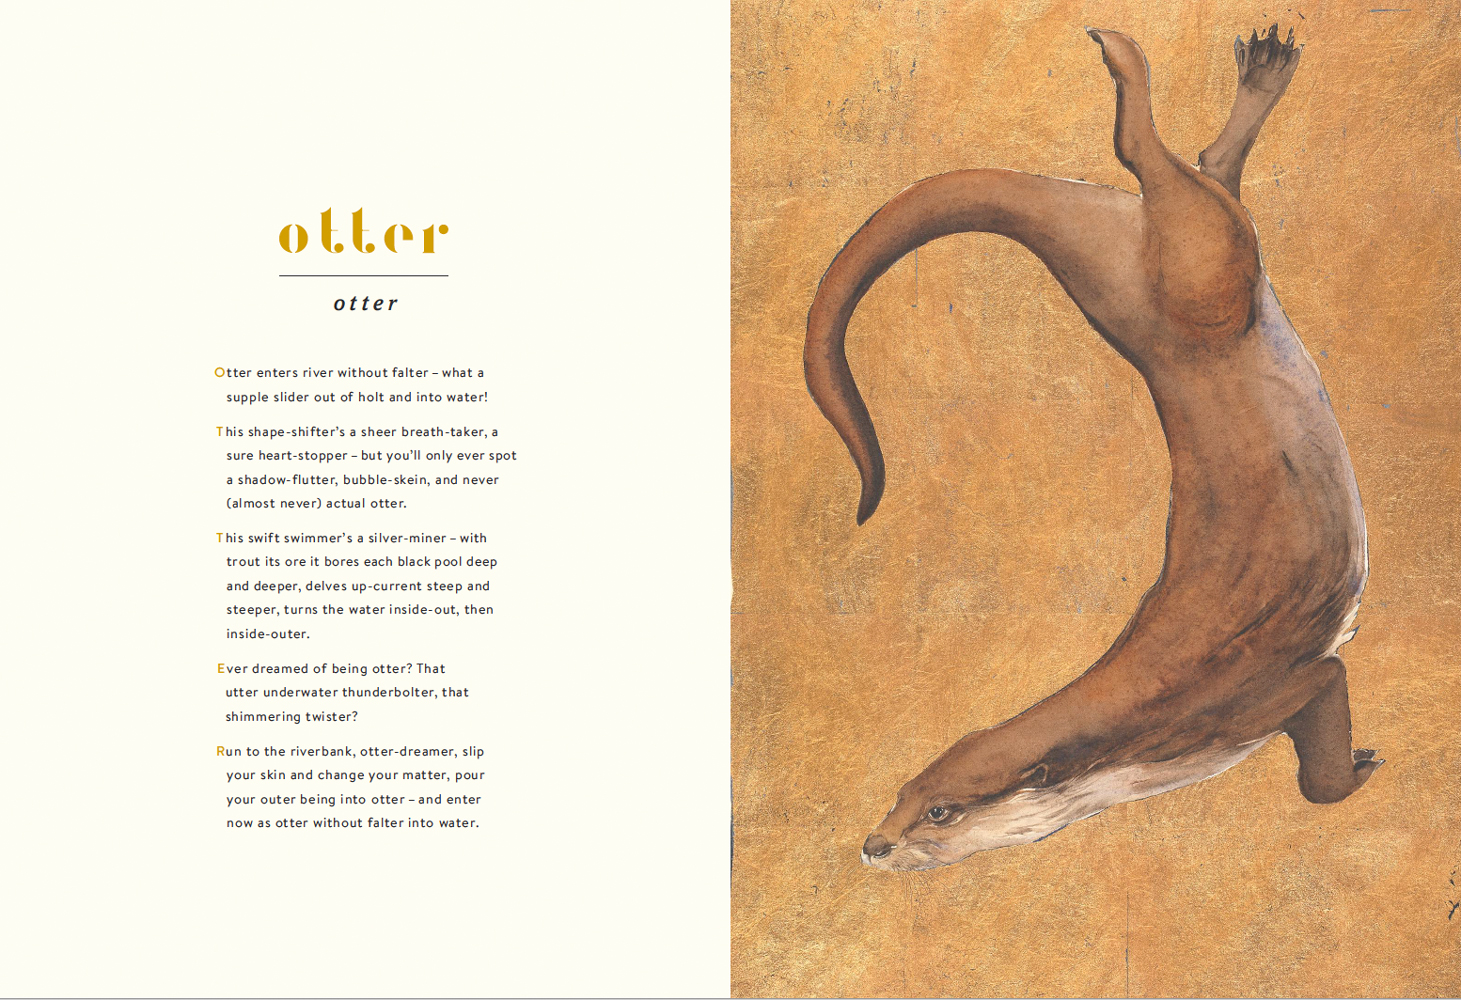 The Otter's spell